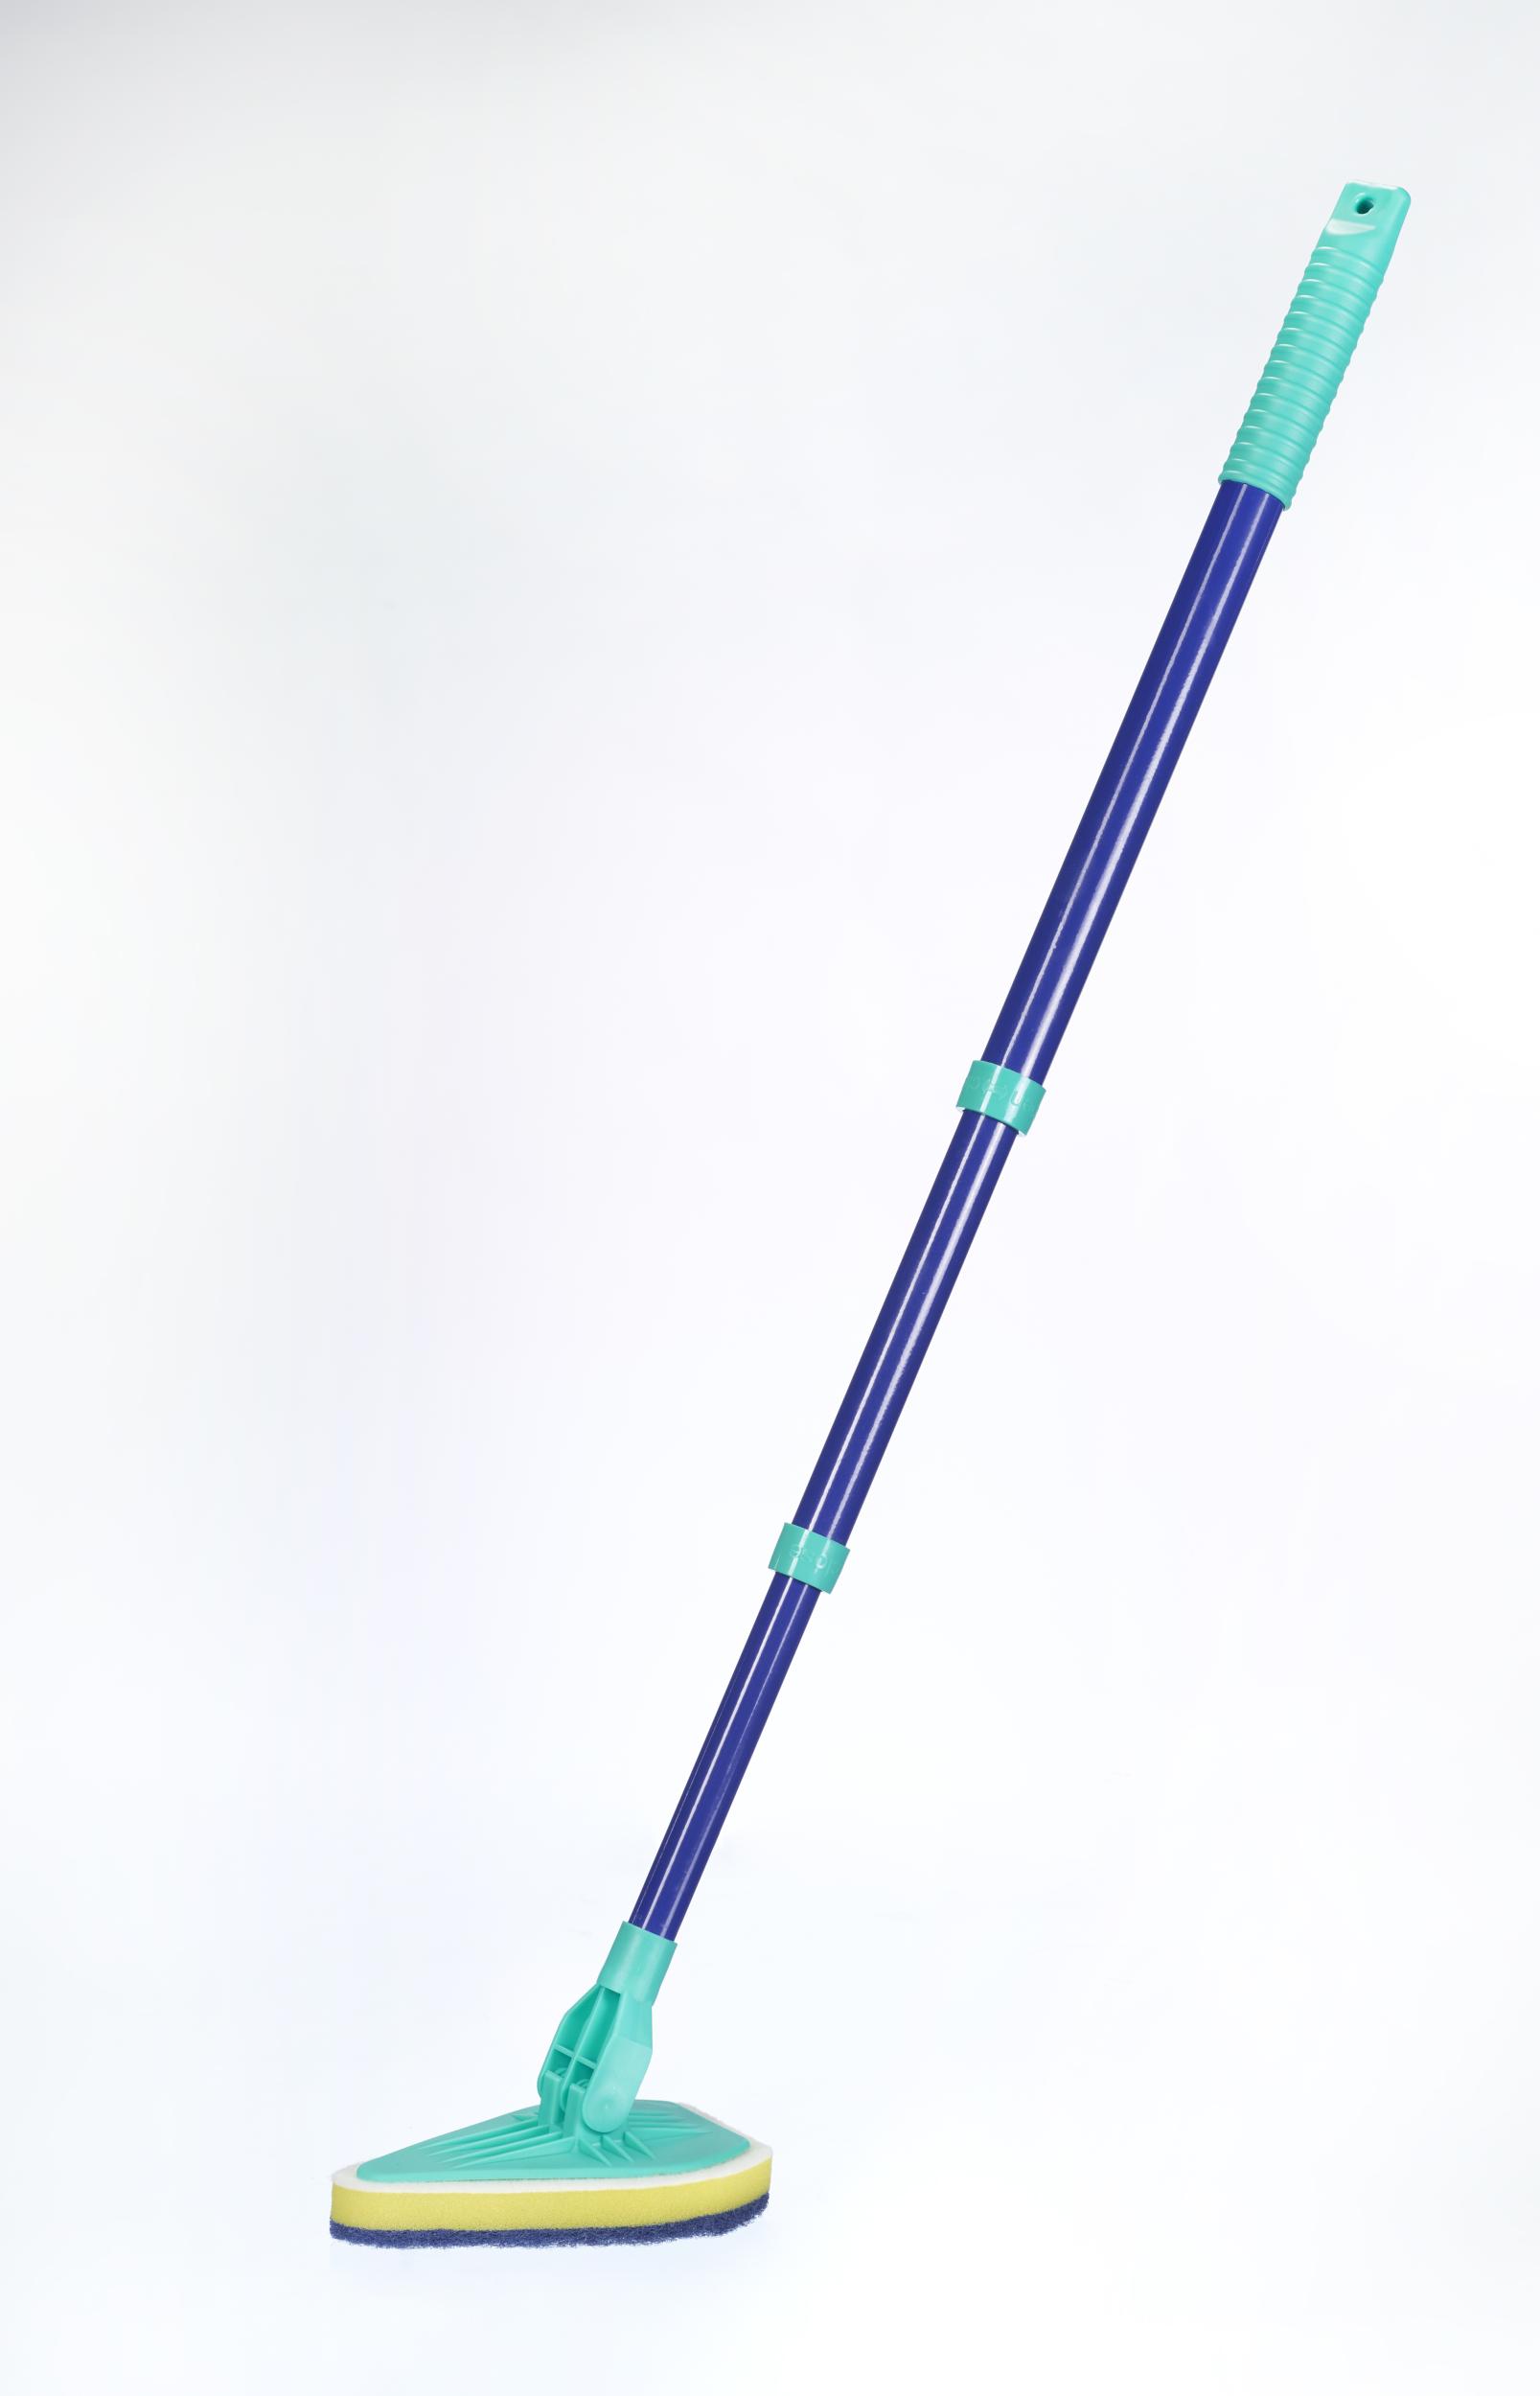 Bad-Wischer, Wischmopp mit Schwammbürste & Teleskopstiel, spezielle Wischform, ausziehbar 45-90 cm